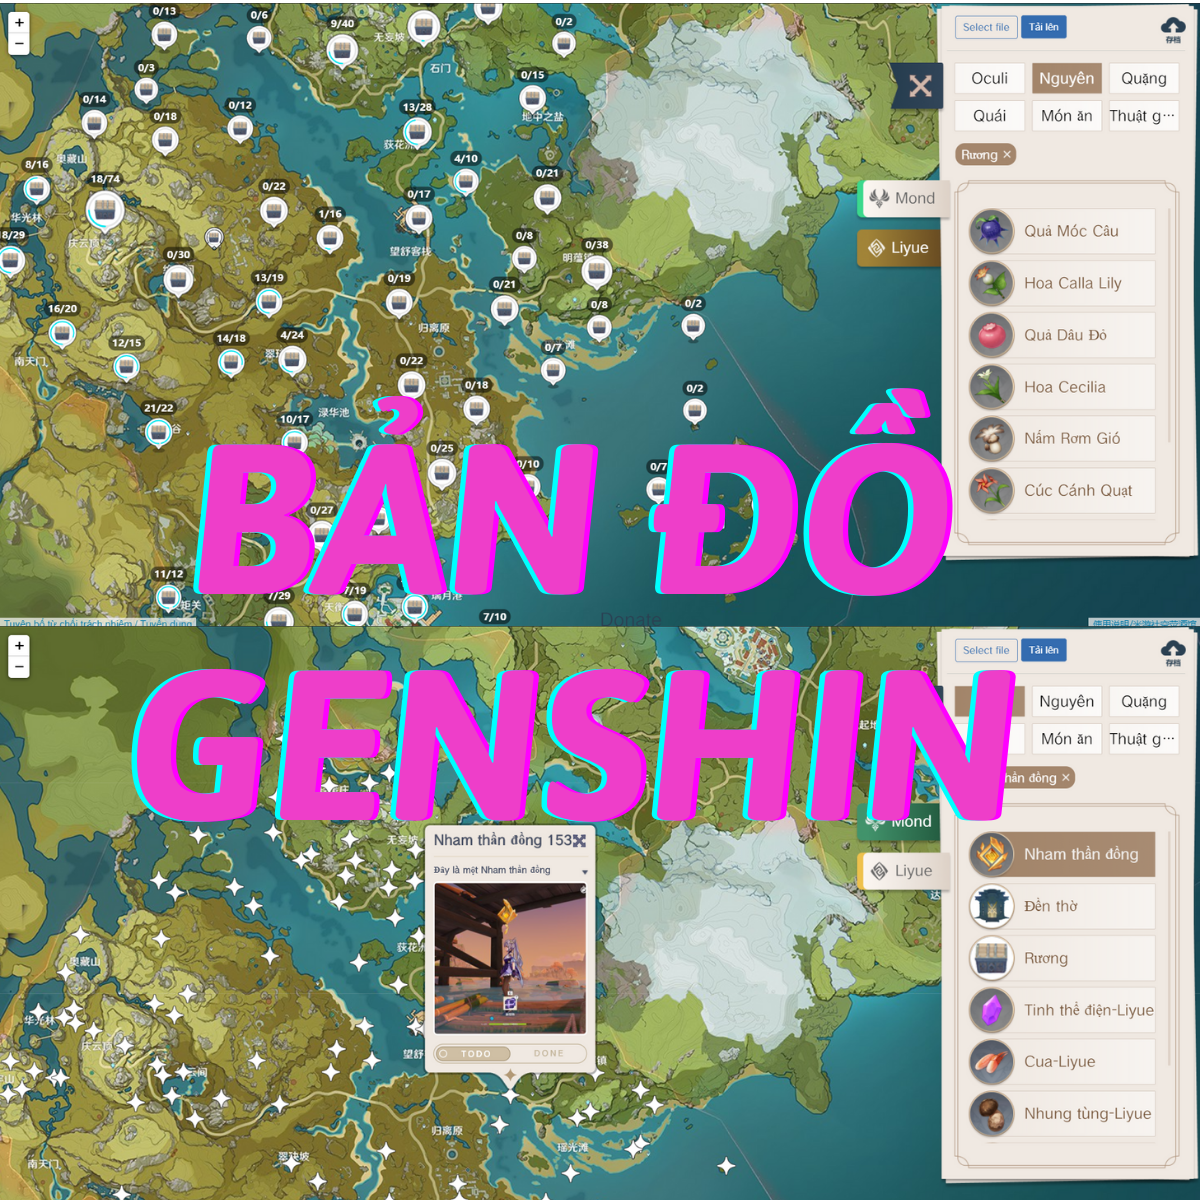 Hãy sẵn sàng để khám phá thế giới đầy phong phú và kỳ lạ của Bản đồ Genshin Impact Tiếng Việt cùng những nhân vật và tinh túy trong game đầy mê hoặc.